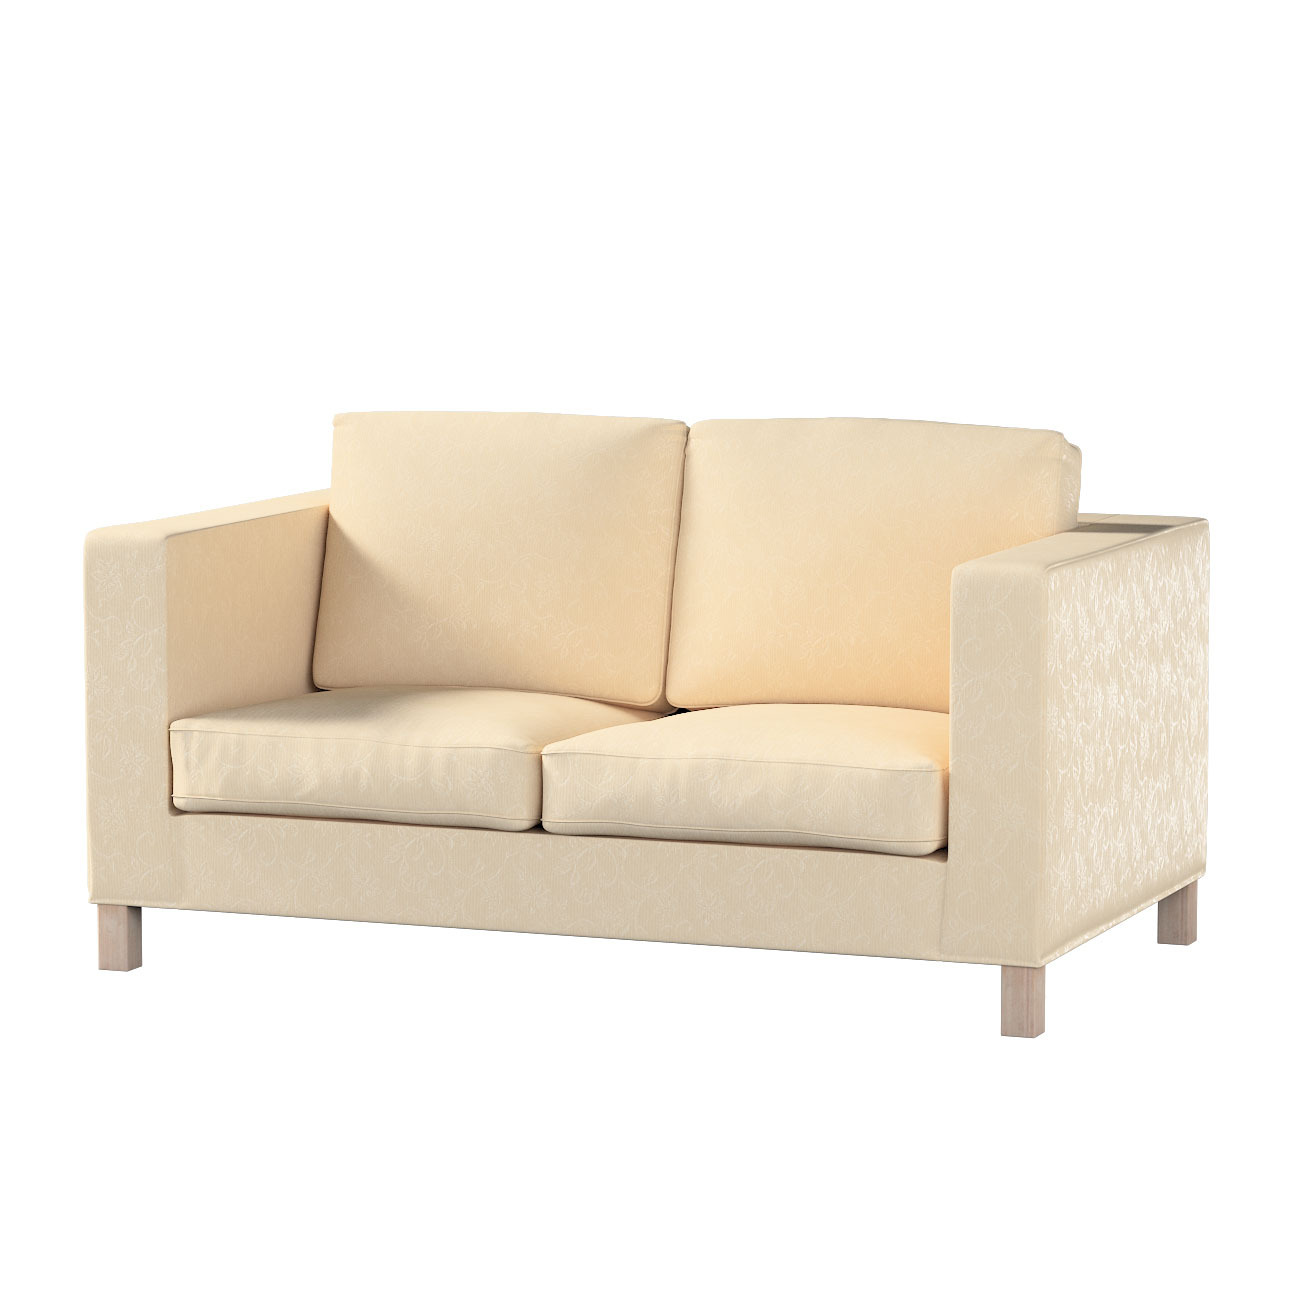 Bezug für Karlanda 2-Sitzer Sofa nicht ausklappbar, kurz, ecru, 60cm x 30cm günstig online kaufen